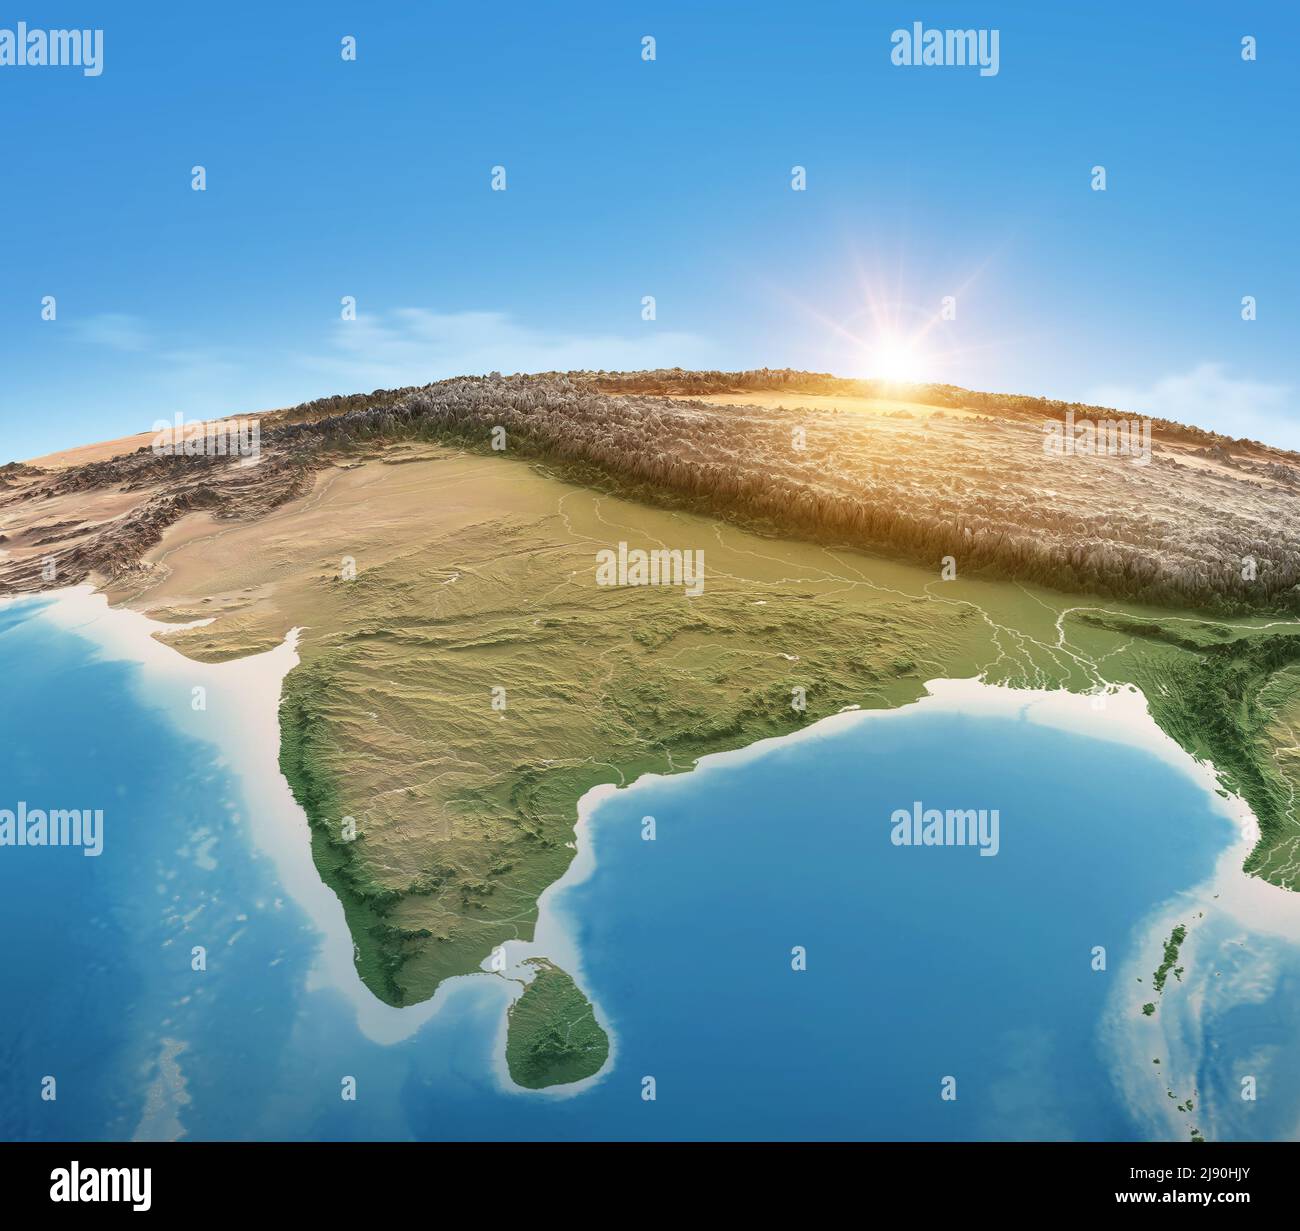 Mappa fisica del pianeta Terra, focalizzata su India, Asia meridionale. Vista satellitare, sole che splende all'orizzonte. Elementi forniti dalla NASA Foto Stock